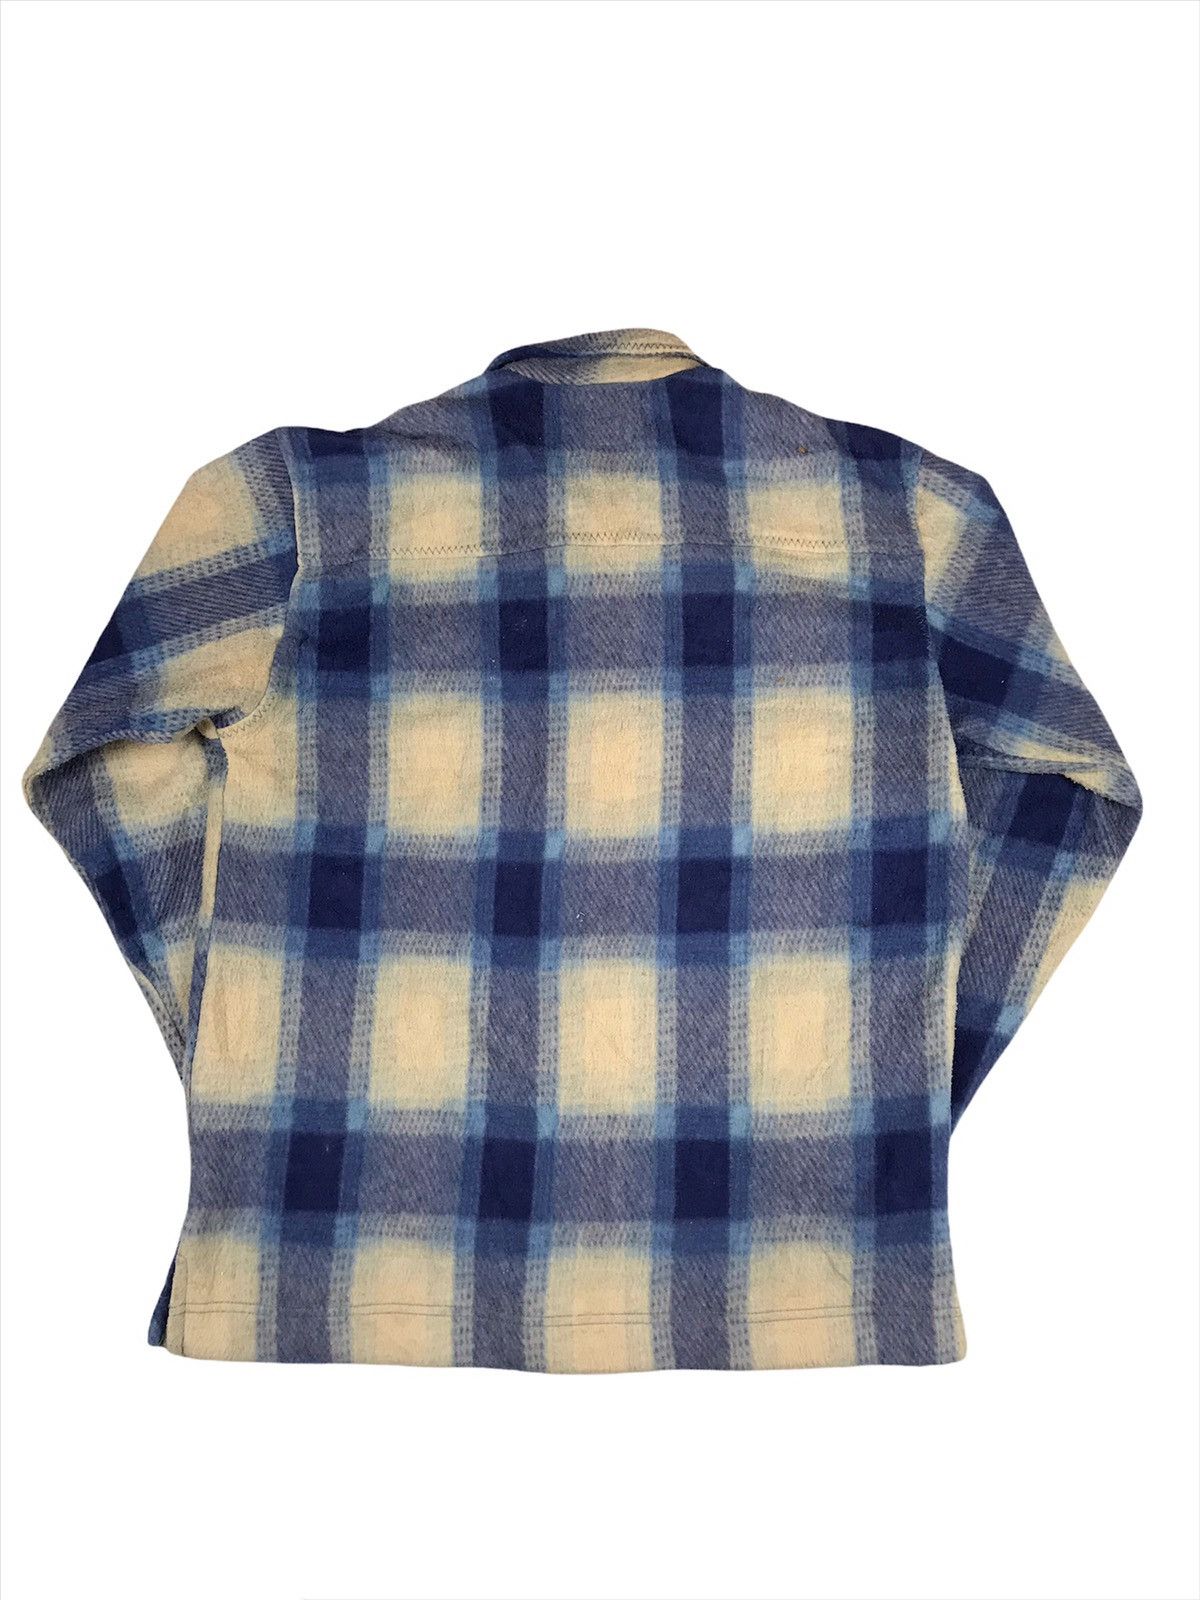 Uniqlo Vintage Uniqlo Flannel Shirt Double Pocket Size US L / EU 52-54 / 3 - 6 Thumbnail